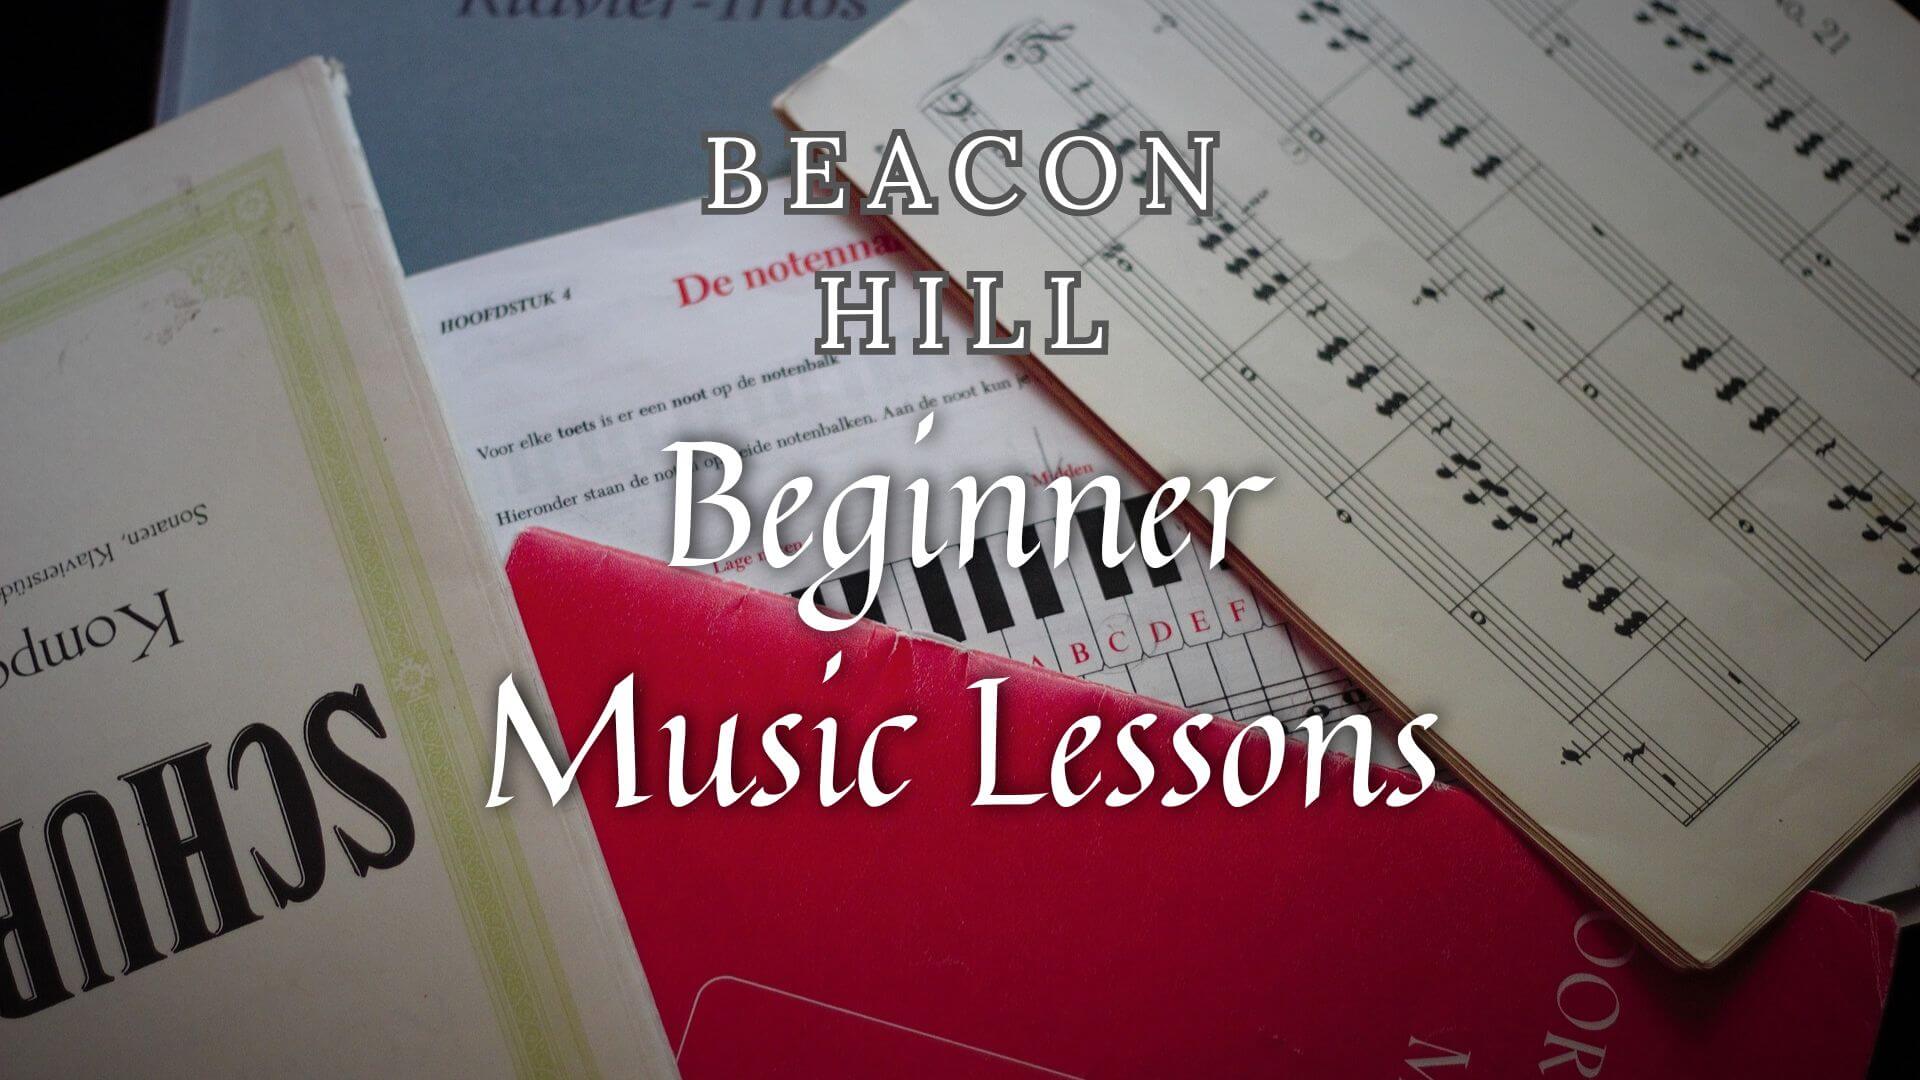 Music Classes for Beginners in Beacon Hill, Massachusetts